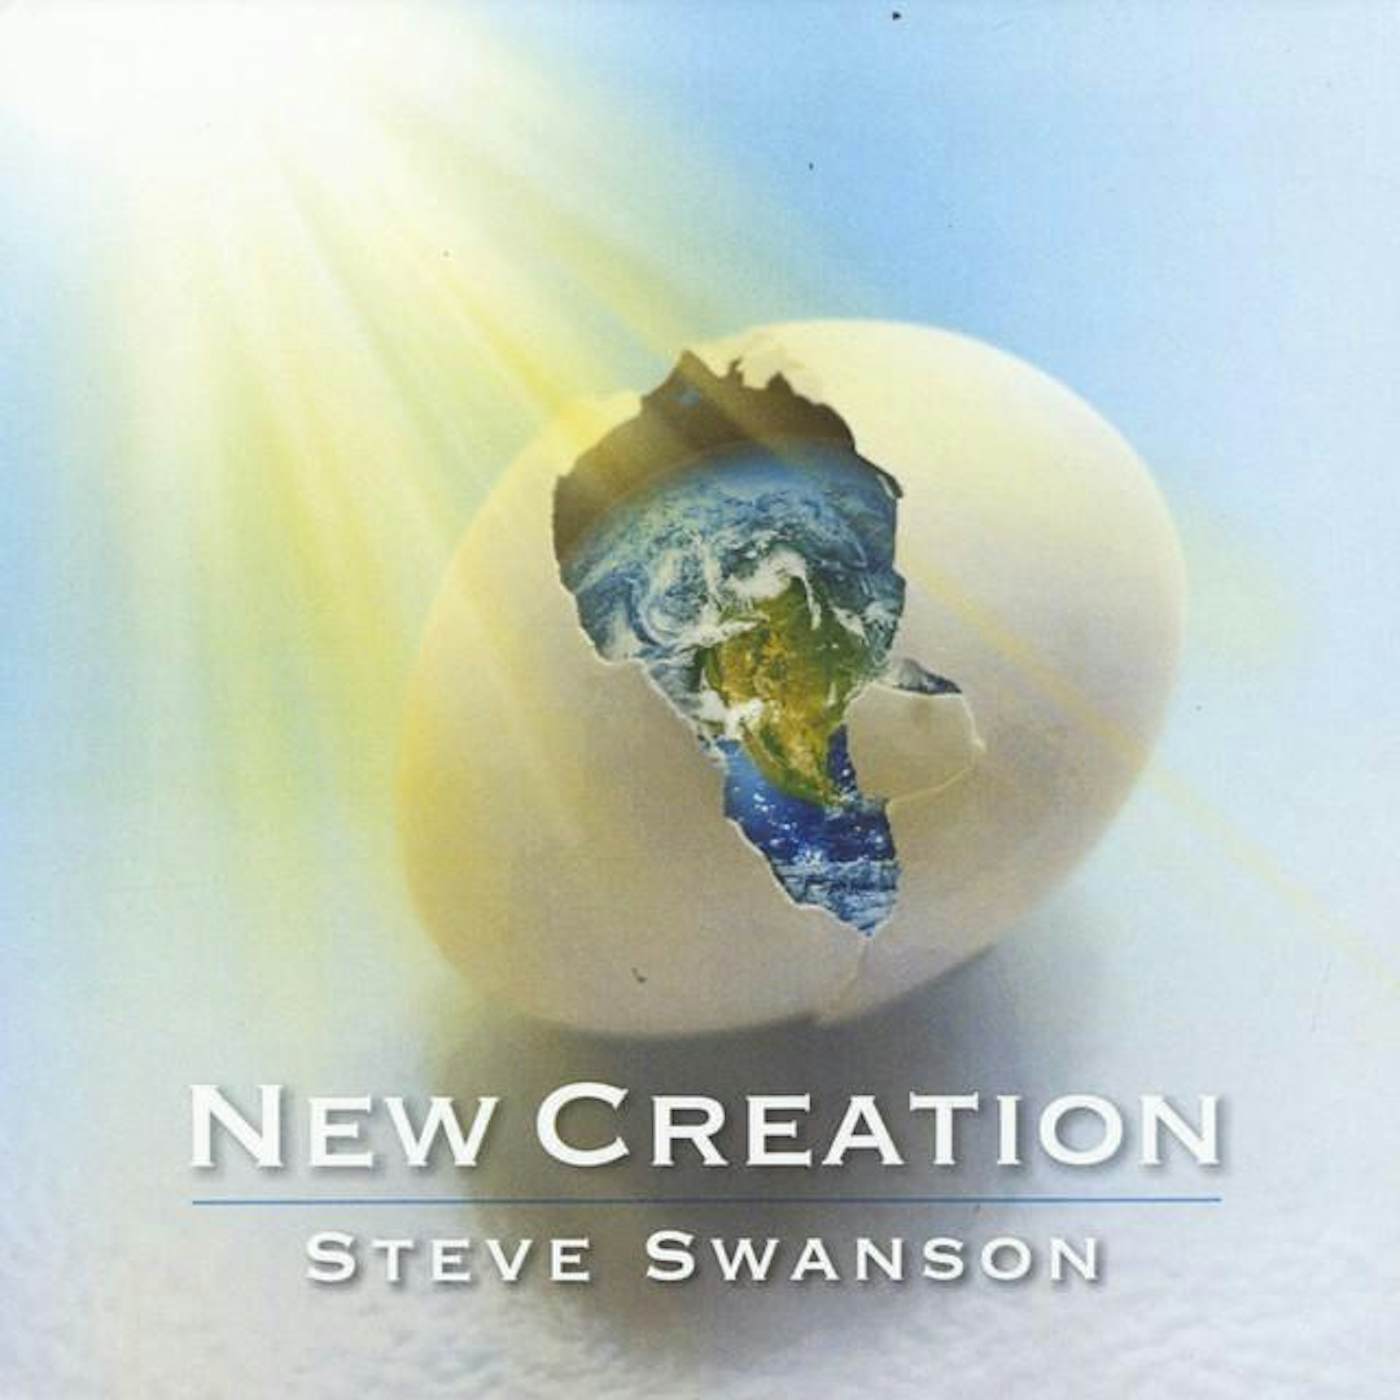 Steve Swanson